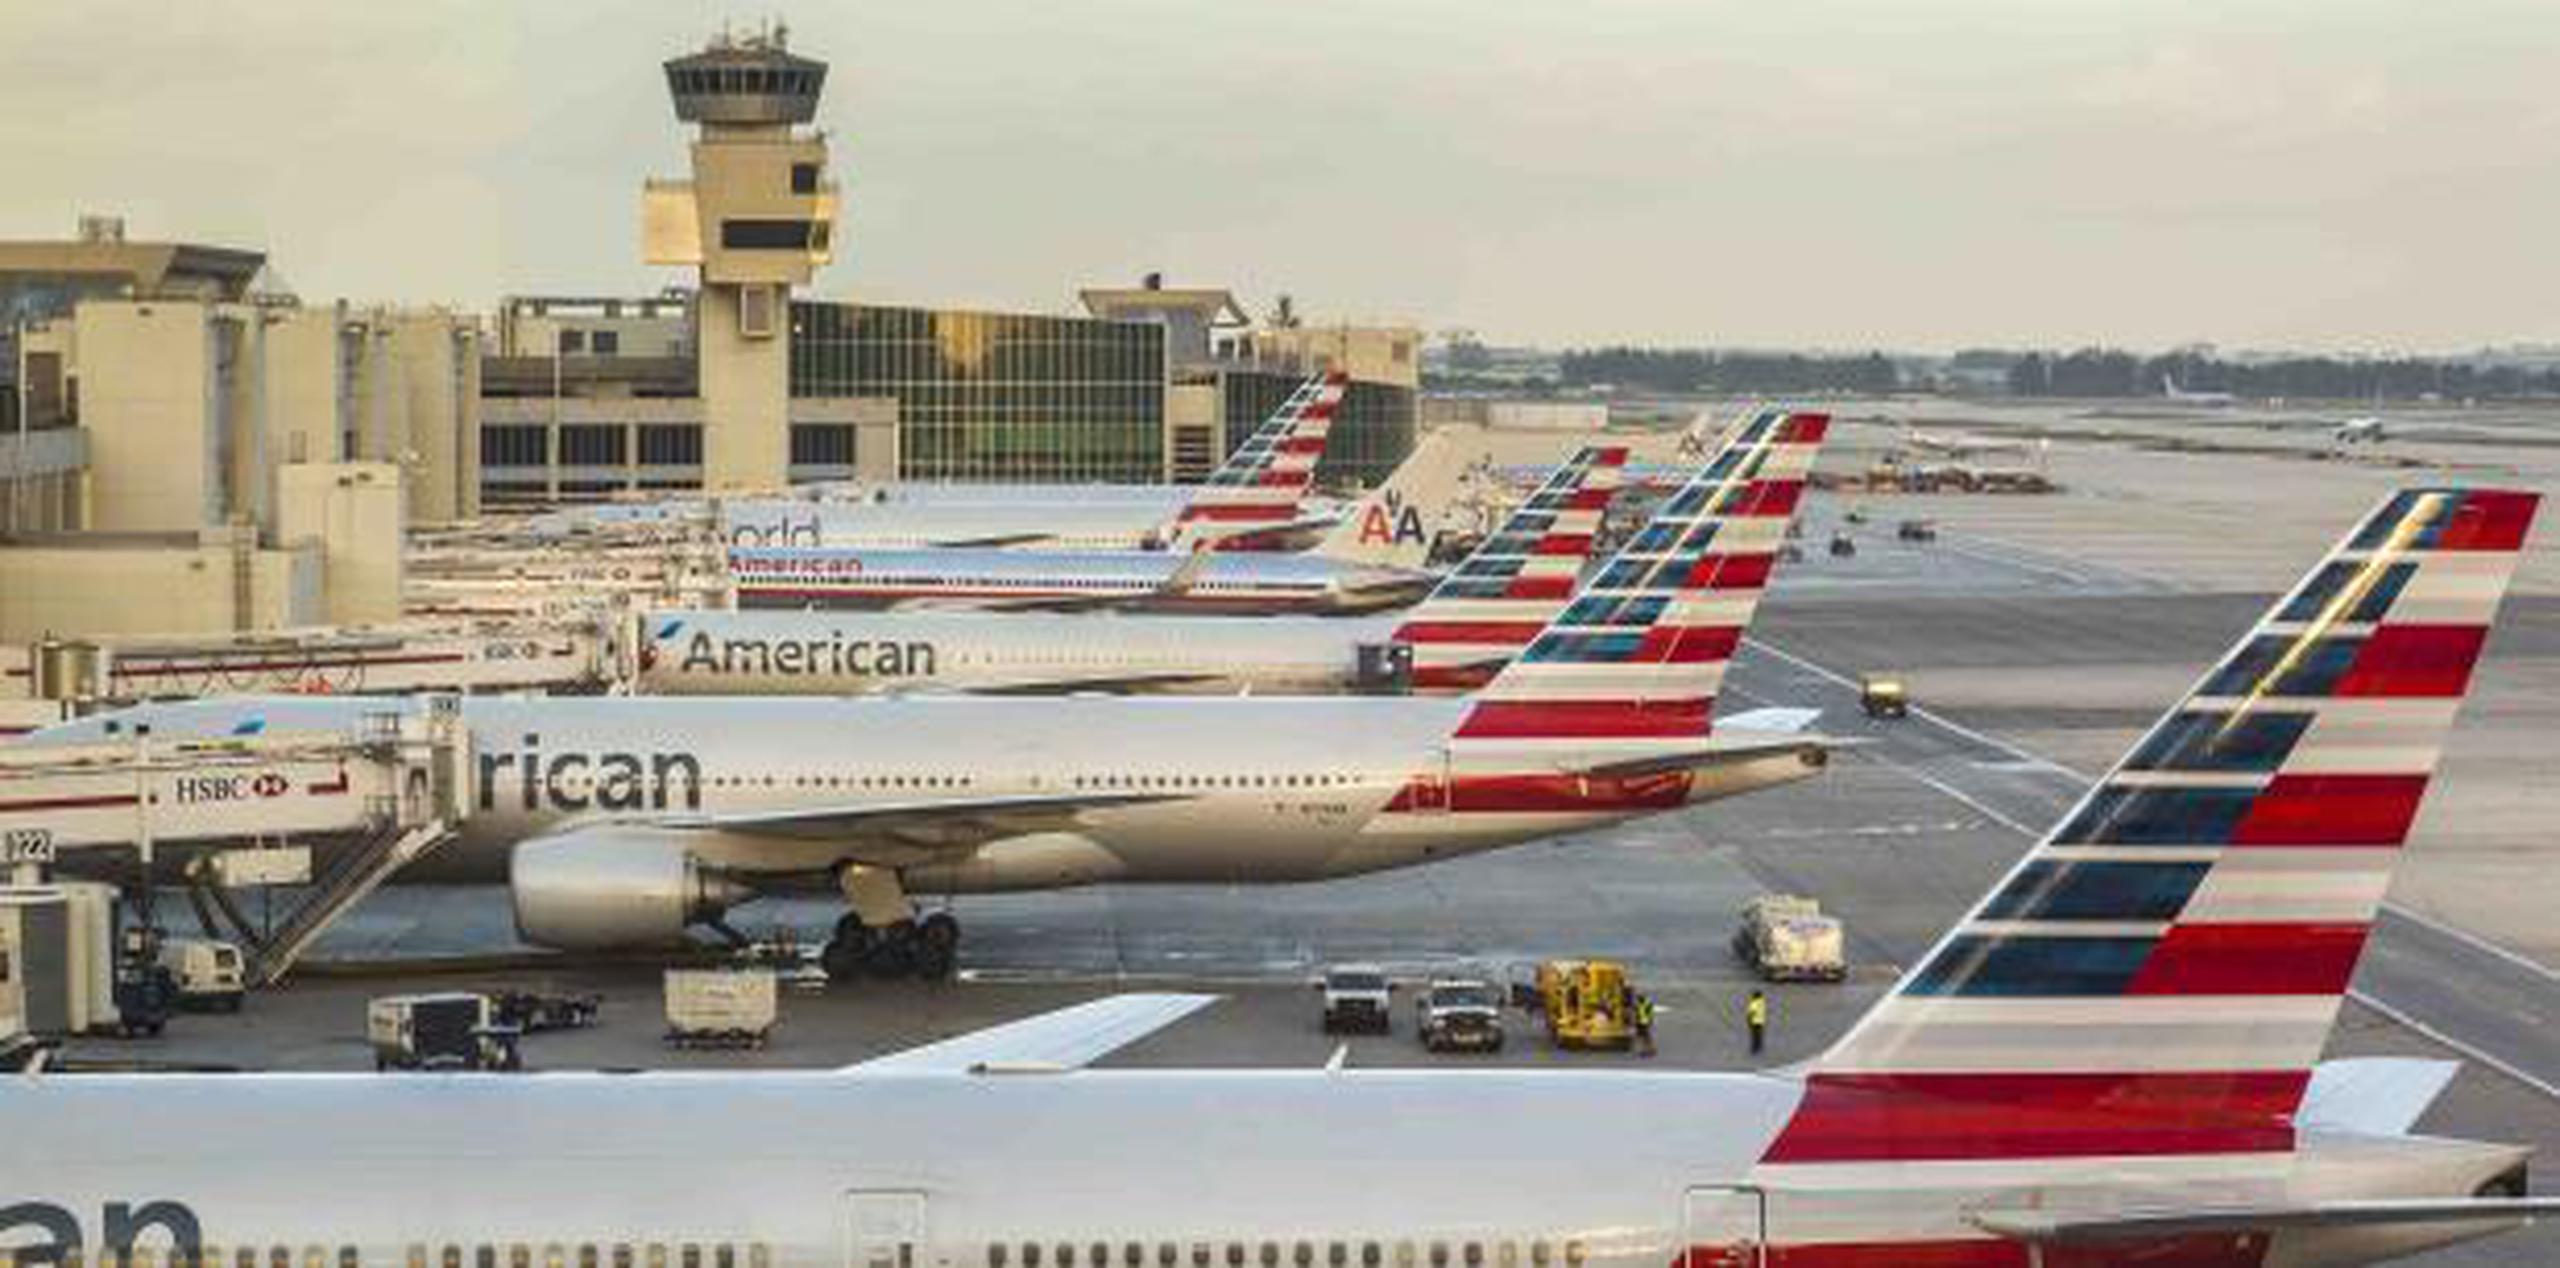 La última aerolínea en dejar de cubrir la ruta Estados Unidos-Venezuela fue American Airlines. (Shutterstock)